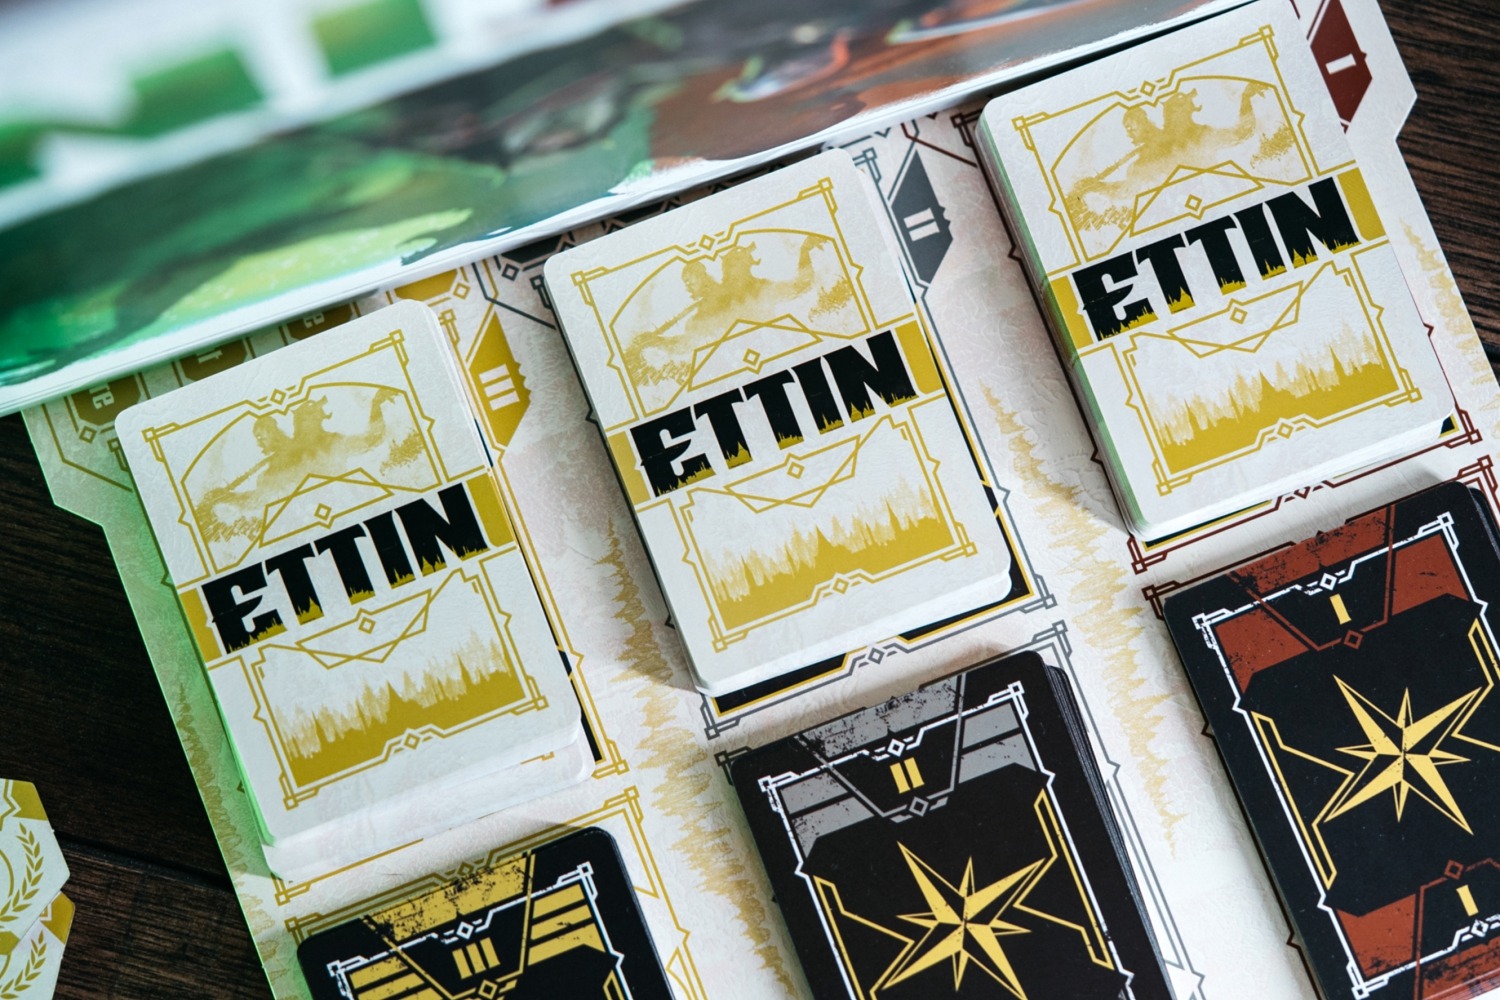 ETTIN : L'Union fait la Force origames wizigames boardgame jeu de société